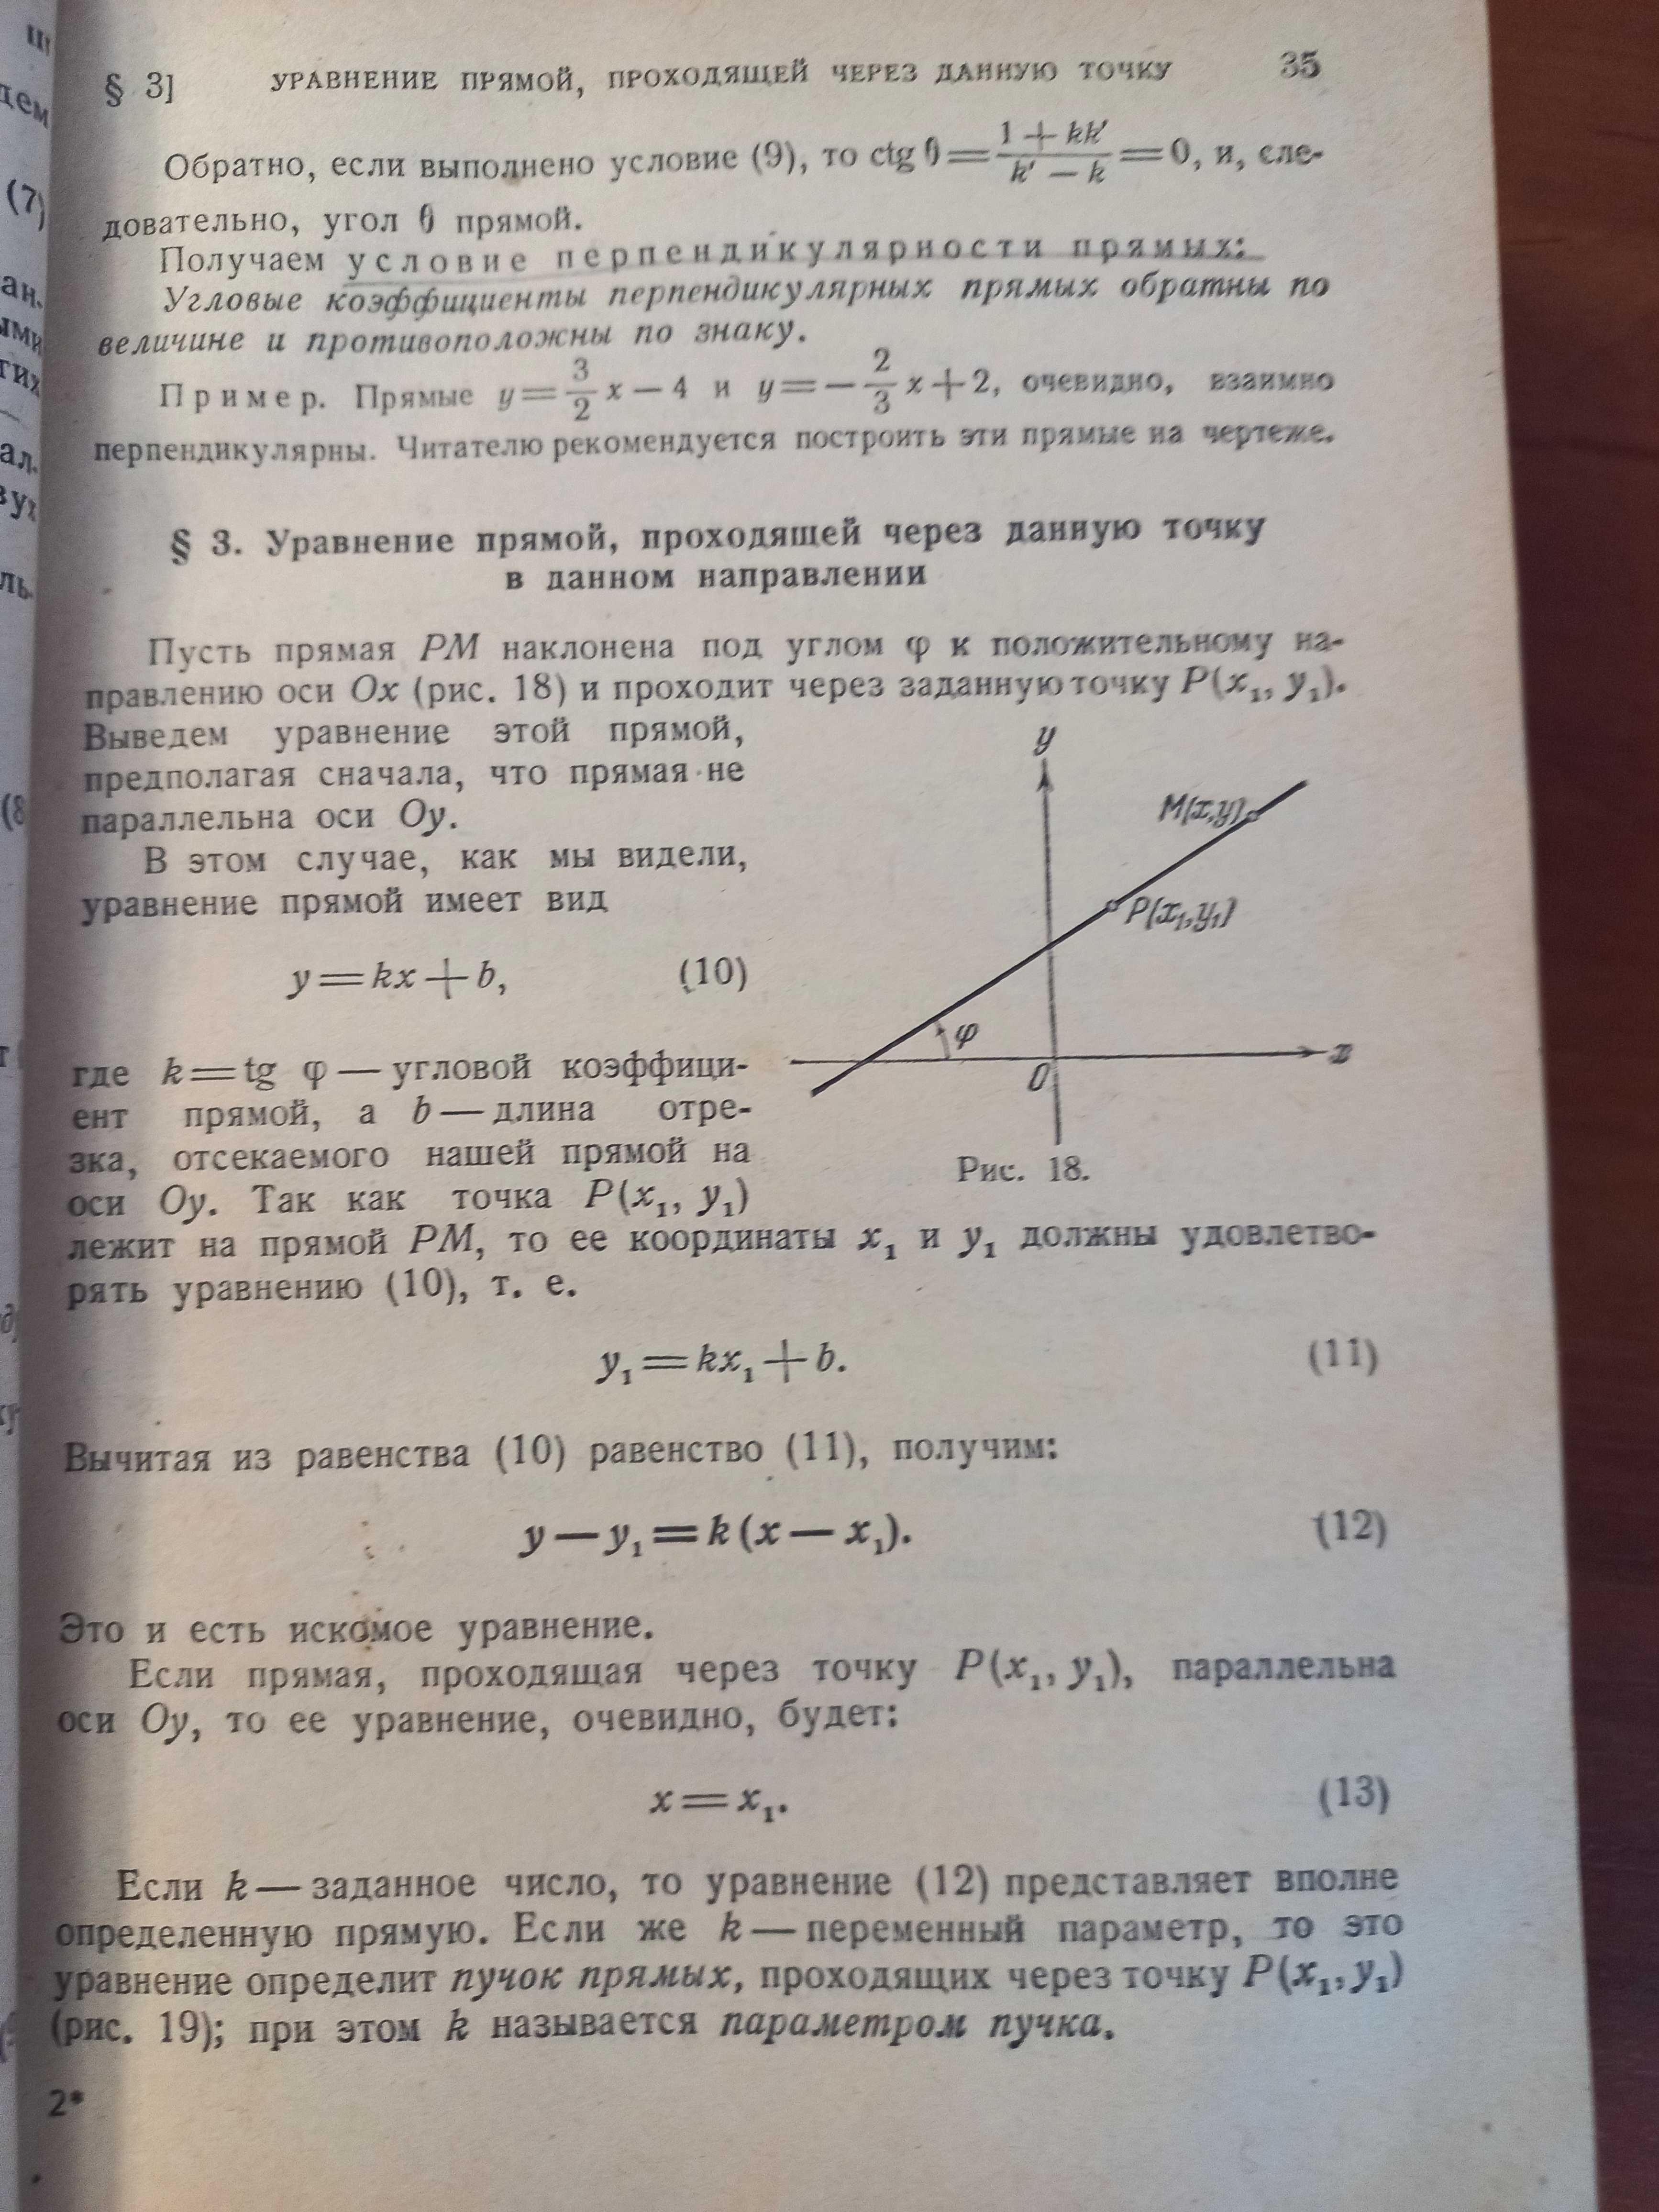 Книга учебник учеба математика теорема анализ функция СССР